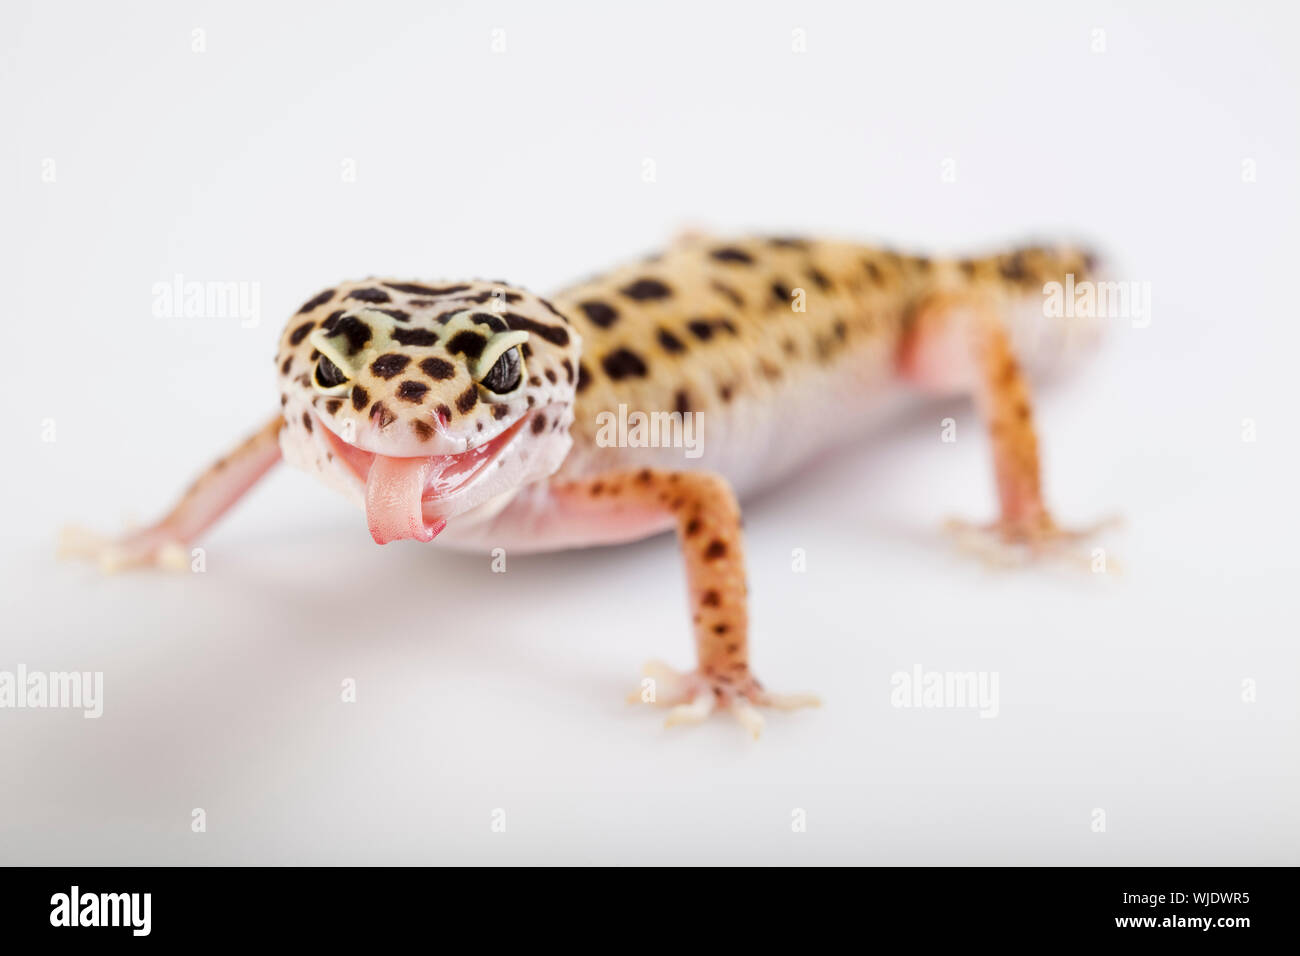 Piccolo rettile gecko lizard Foto Stock